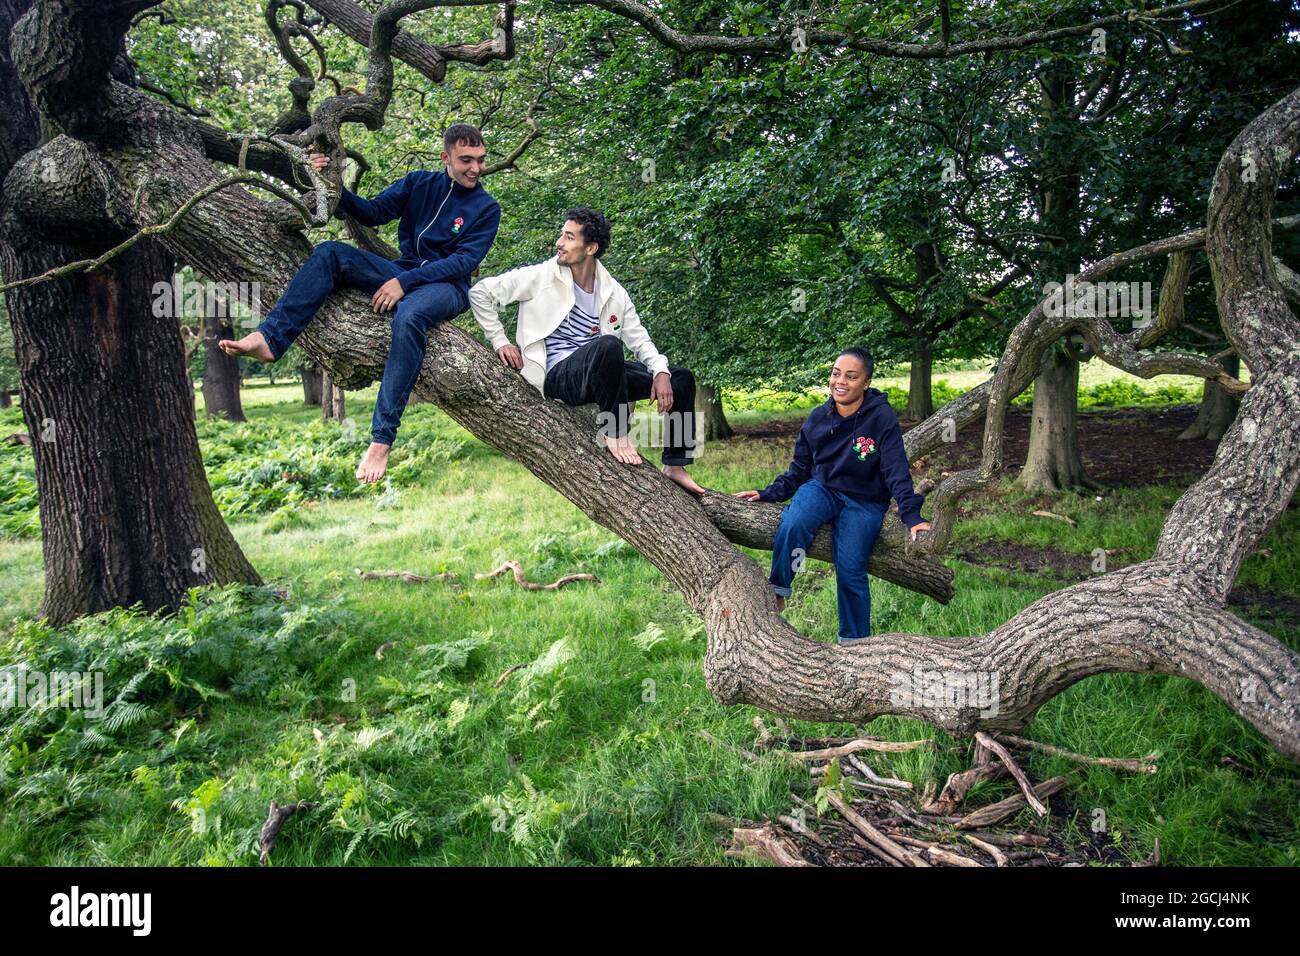 Gruppe junger Menschen im Park, die einen Baum klettern Stockfoto